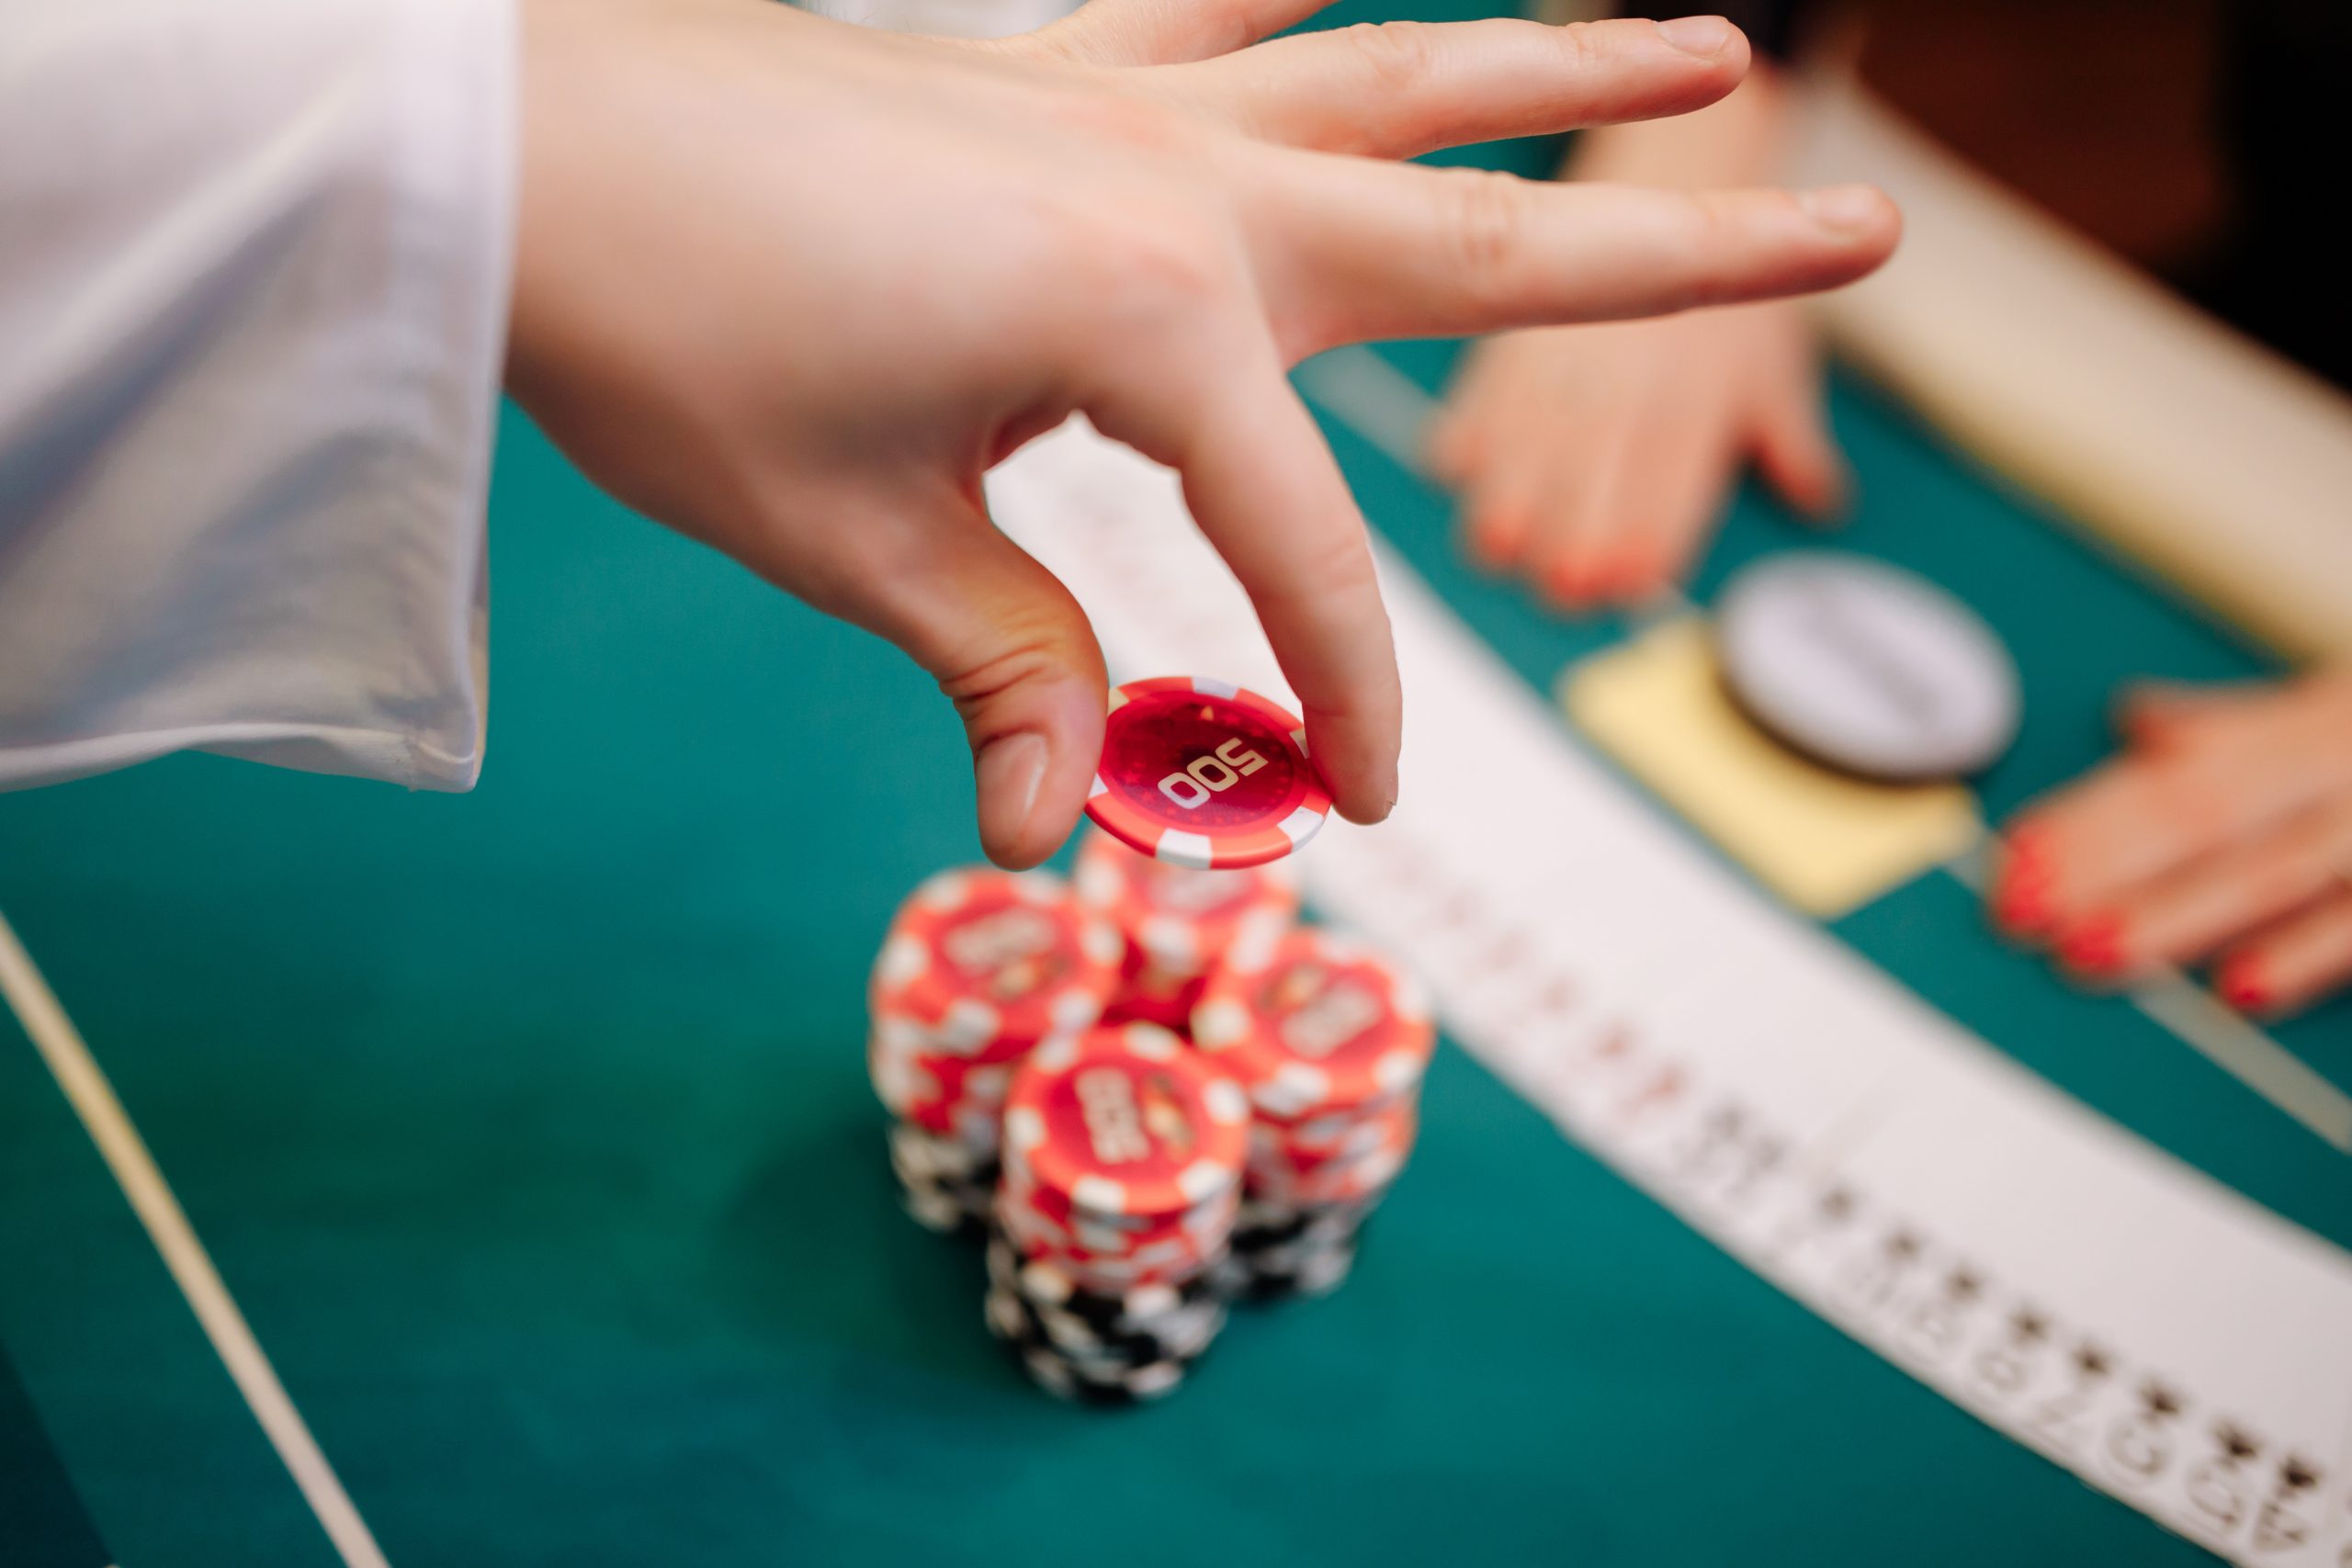 The Best Bonuses For Online Casino Games